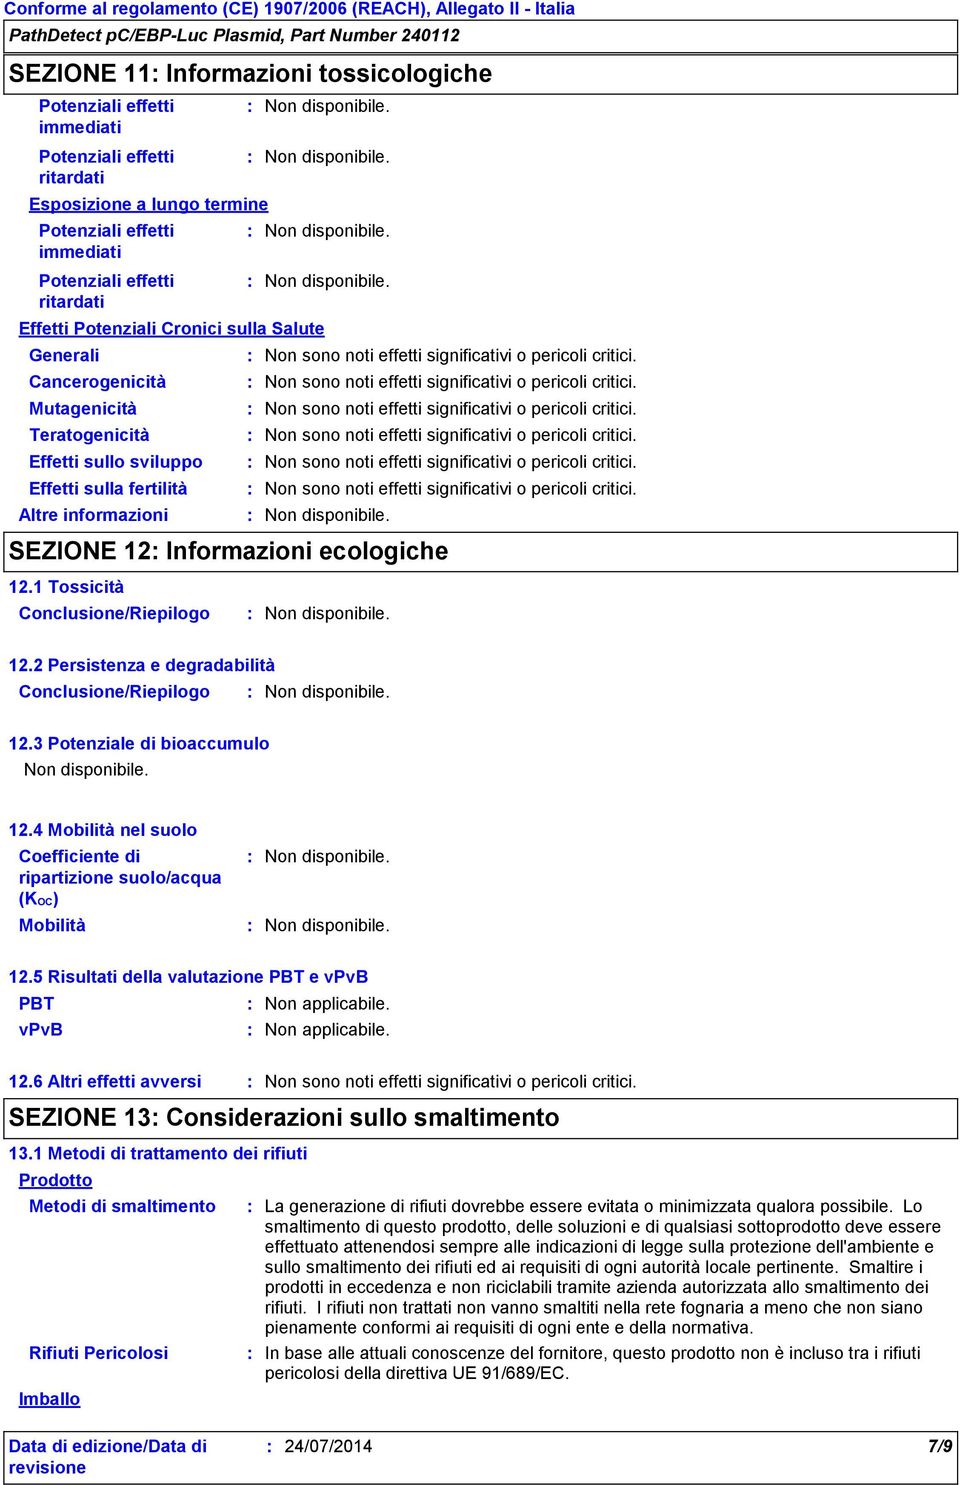 1 Tossicità Conclusione/Riepilogo 12.2 Persistenza e degradabilità Conclusione/Riepilogo 12.3 Potenziale di bioaccumulo 12.